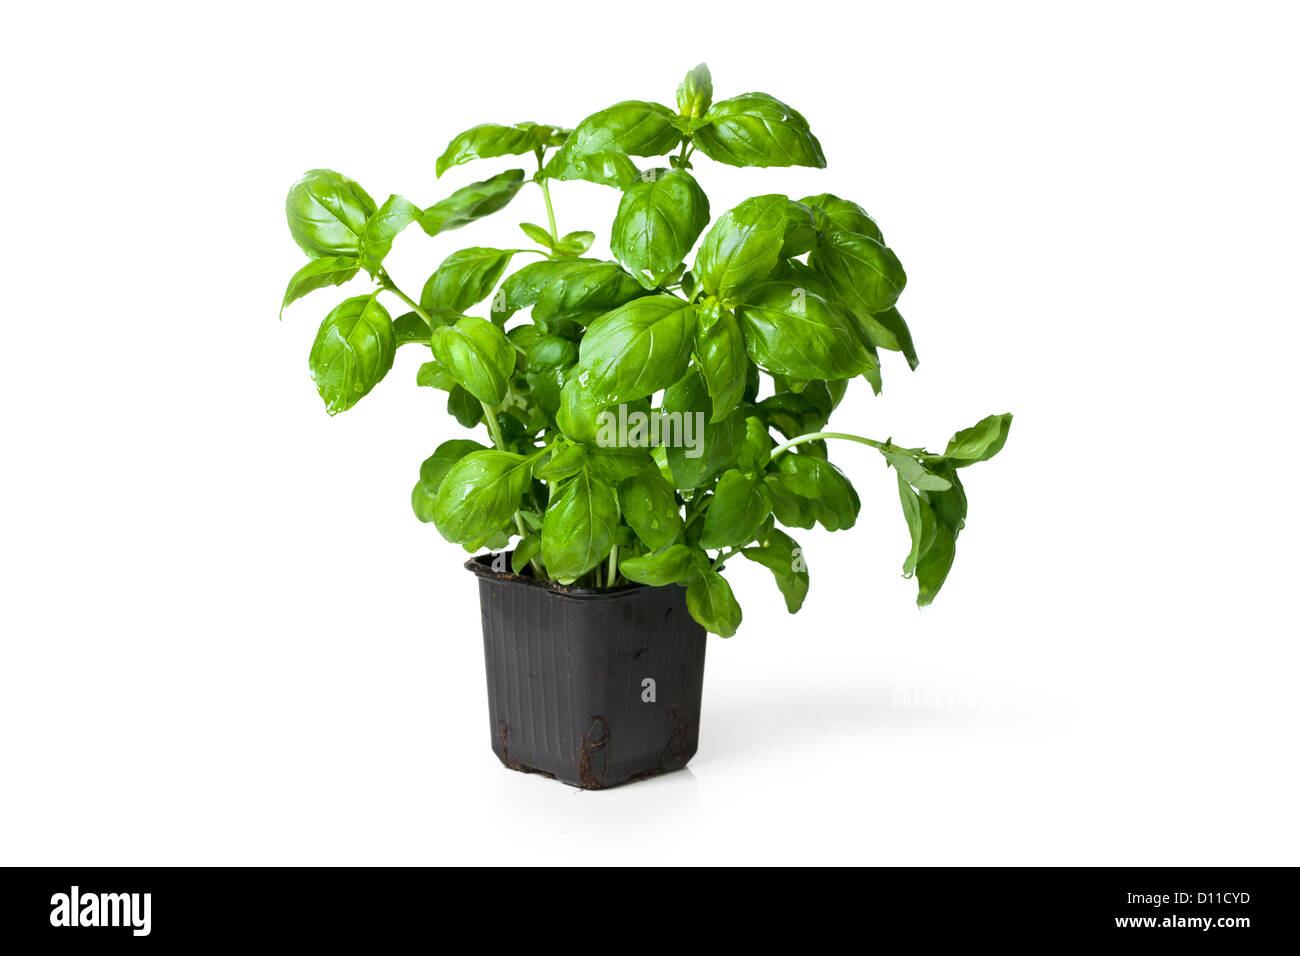 Photo de basilic frais plante dans un pot en plastique sur fond blanc. Banque D'Images